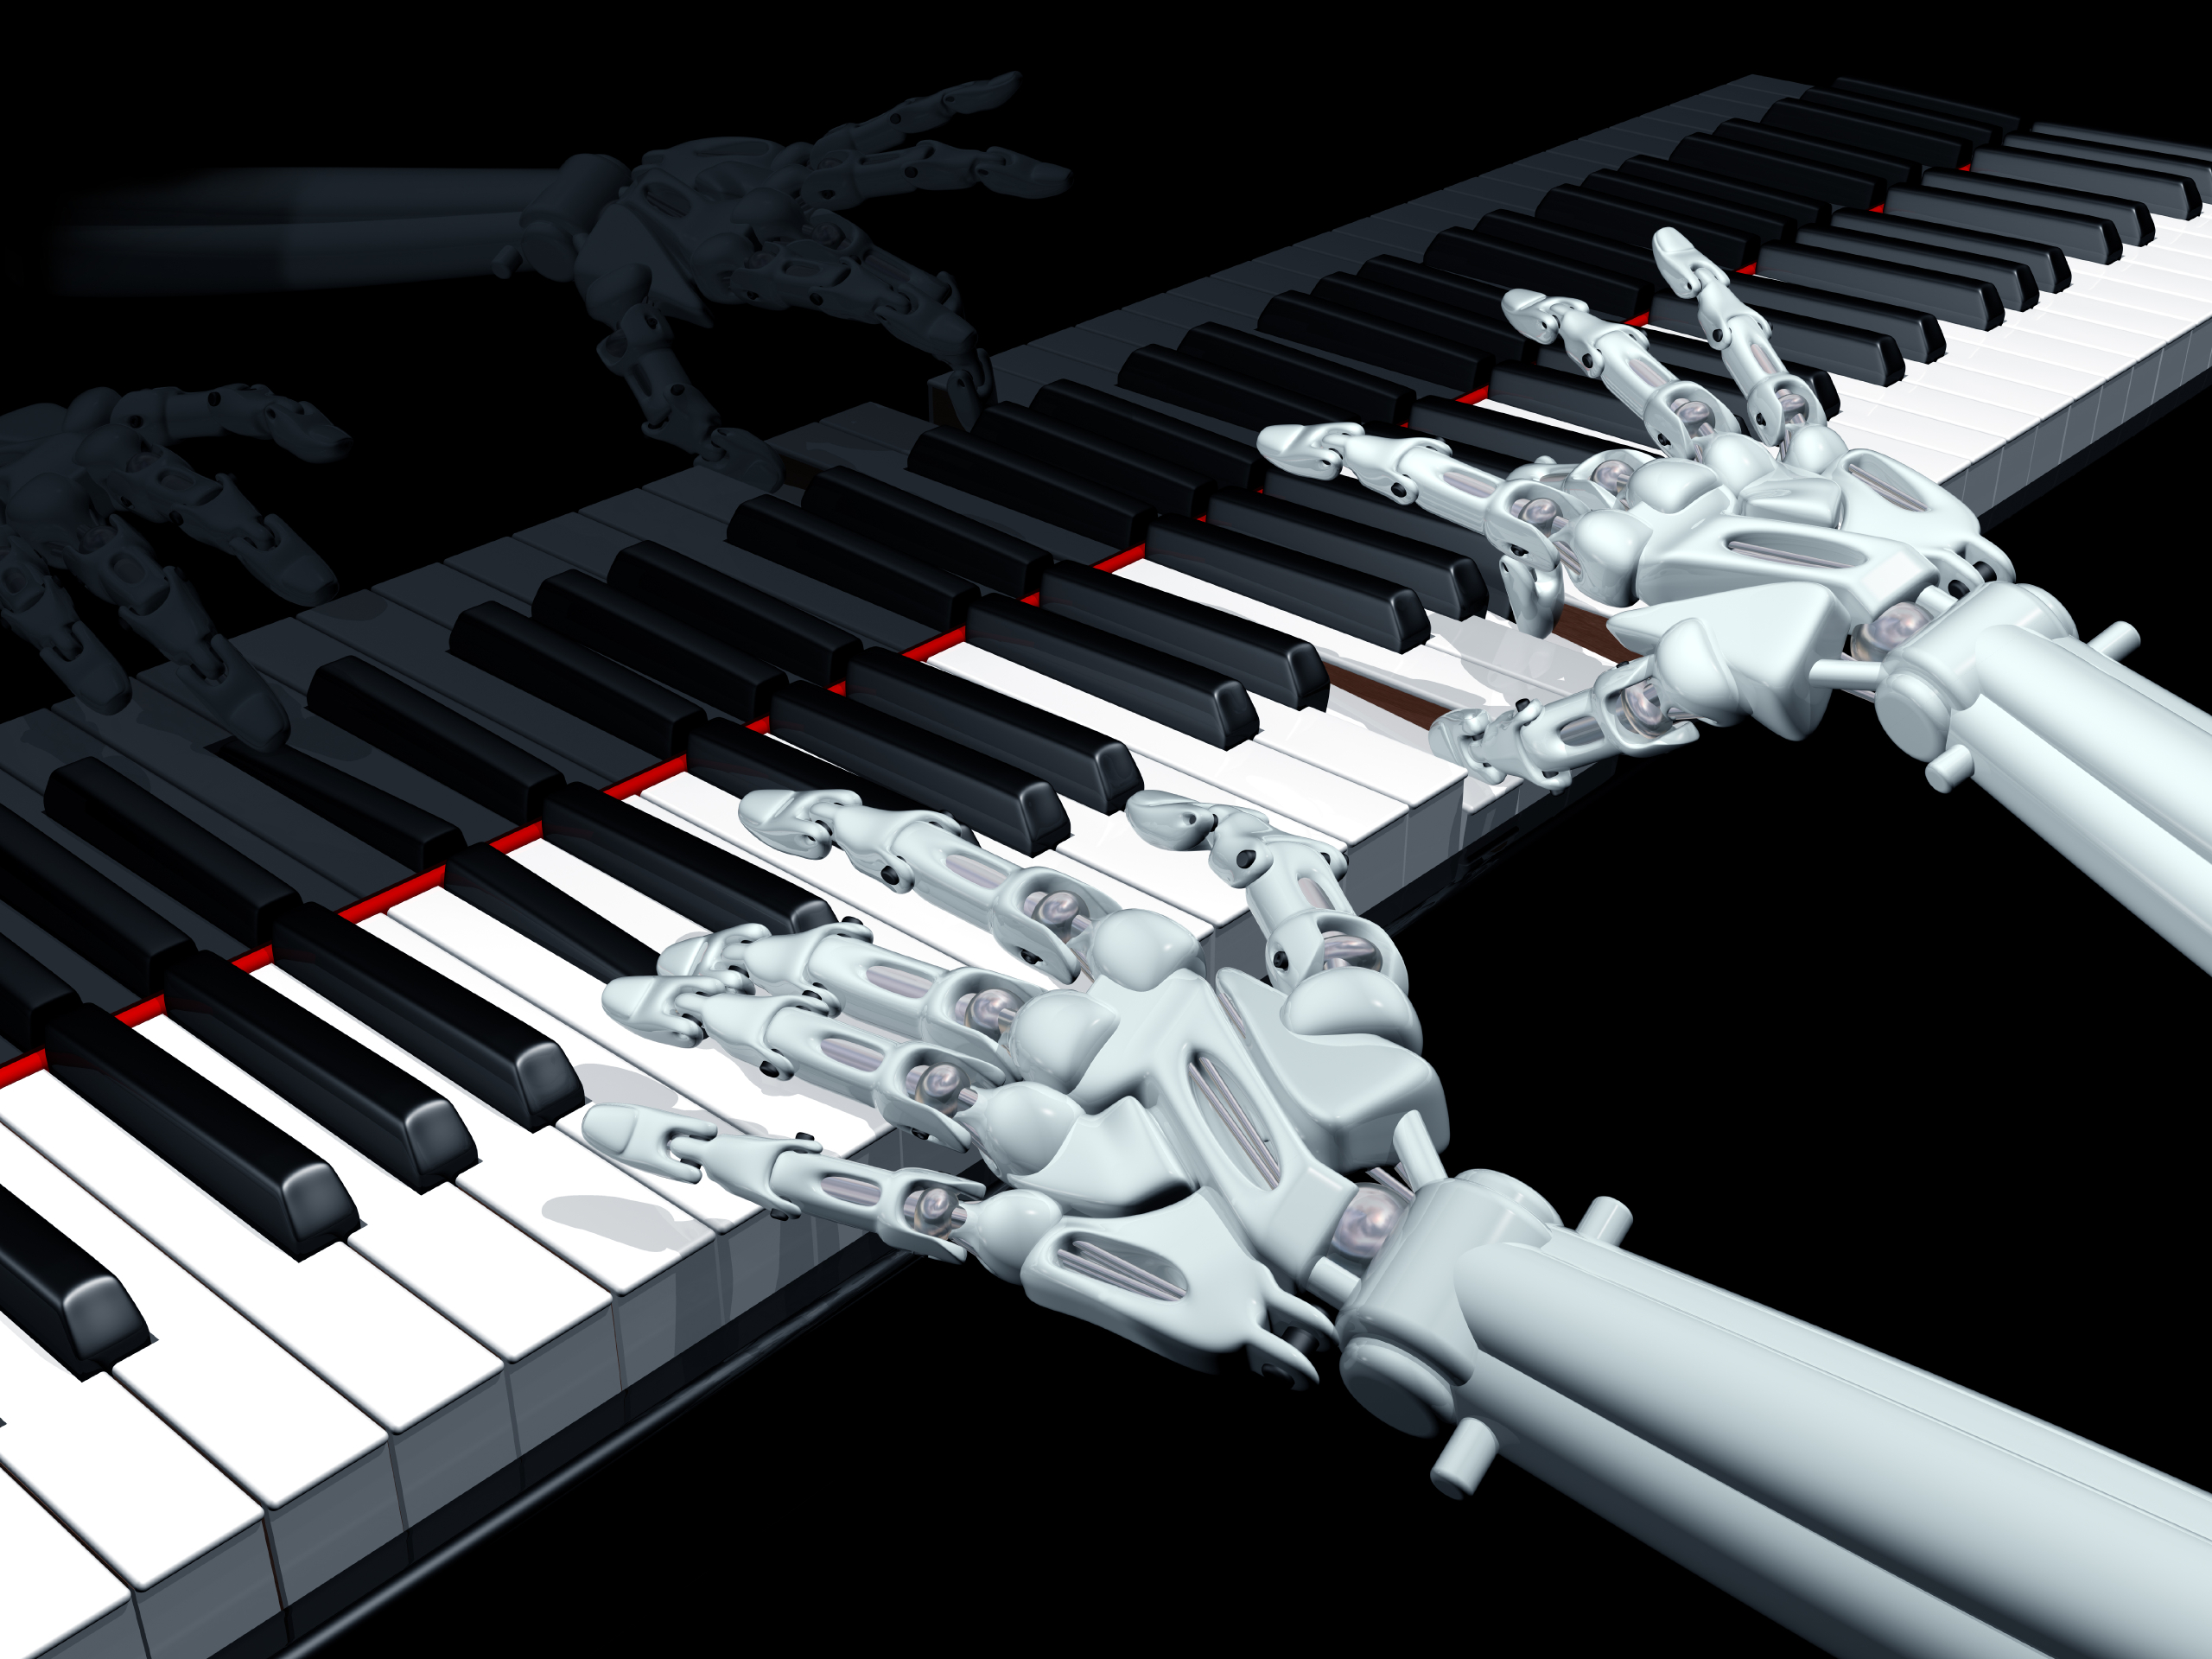 Ии для написания песен. Современные музыкальные технологии. Робот на пианино. Робот музыкант. Пианино с искусственным интеллектом.